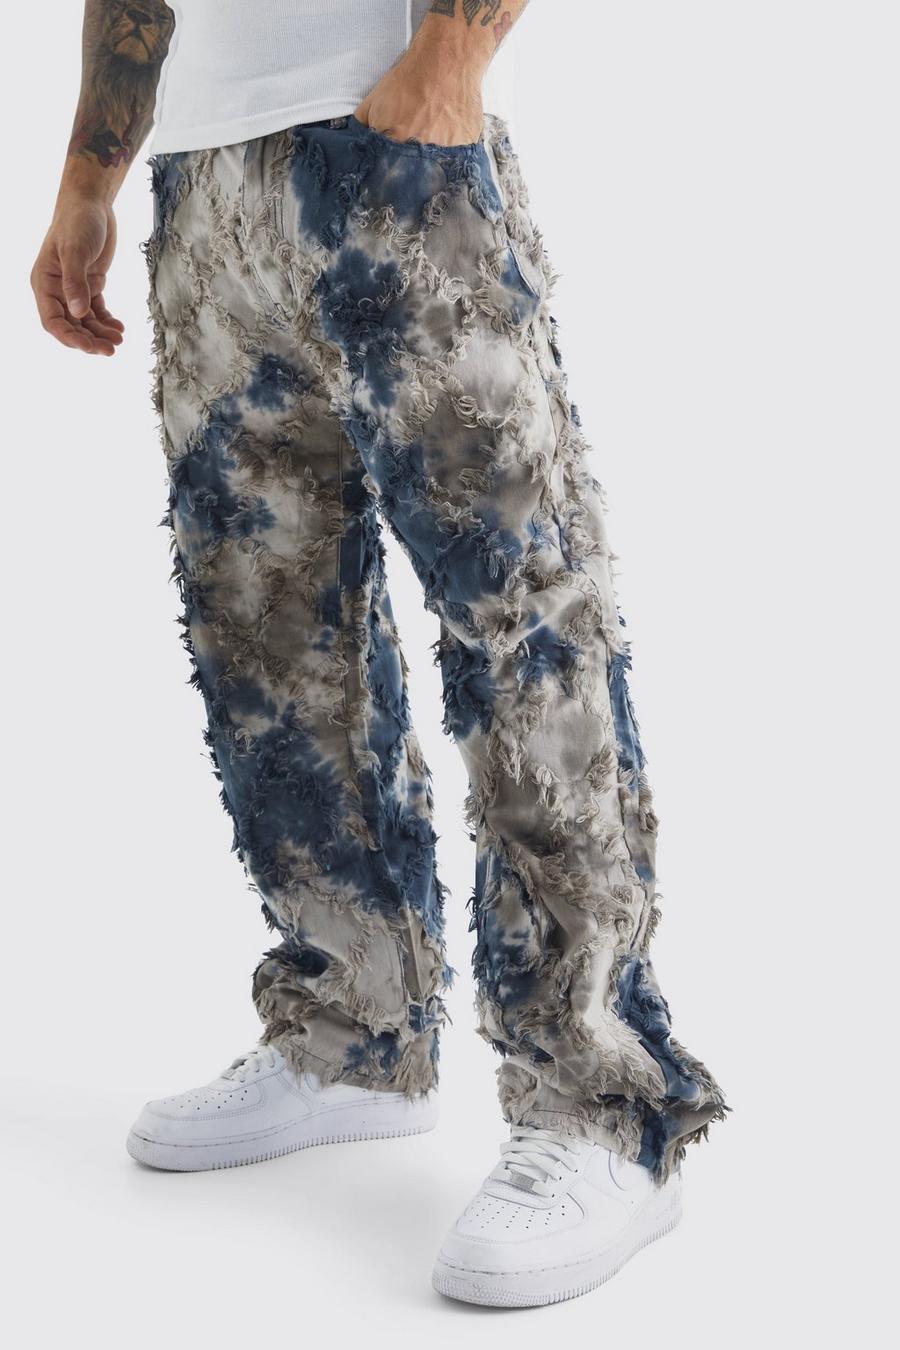 Pantaloni stile arazzo in fantasia militare effetto petrolio con vita fissa, Charcoal